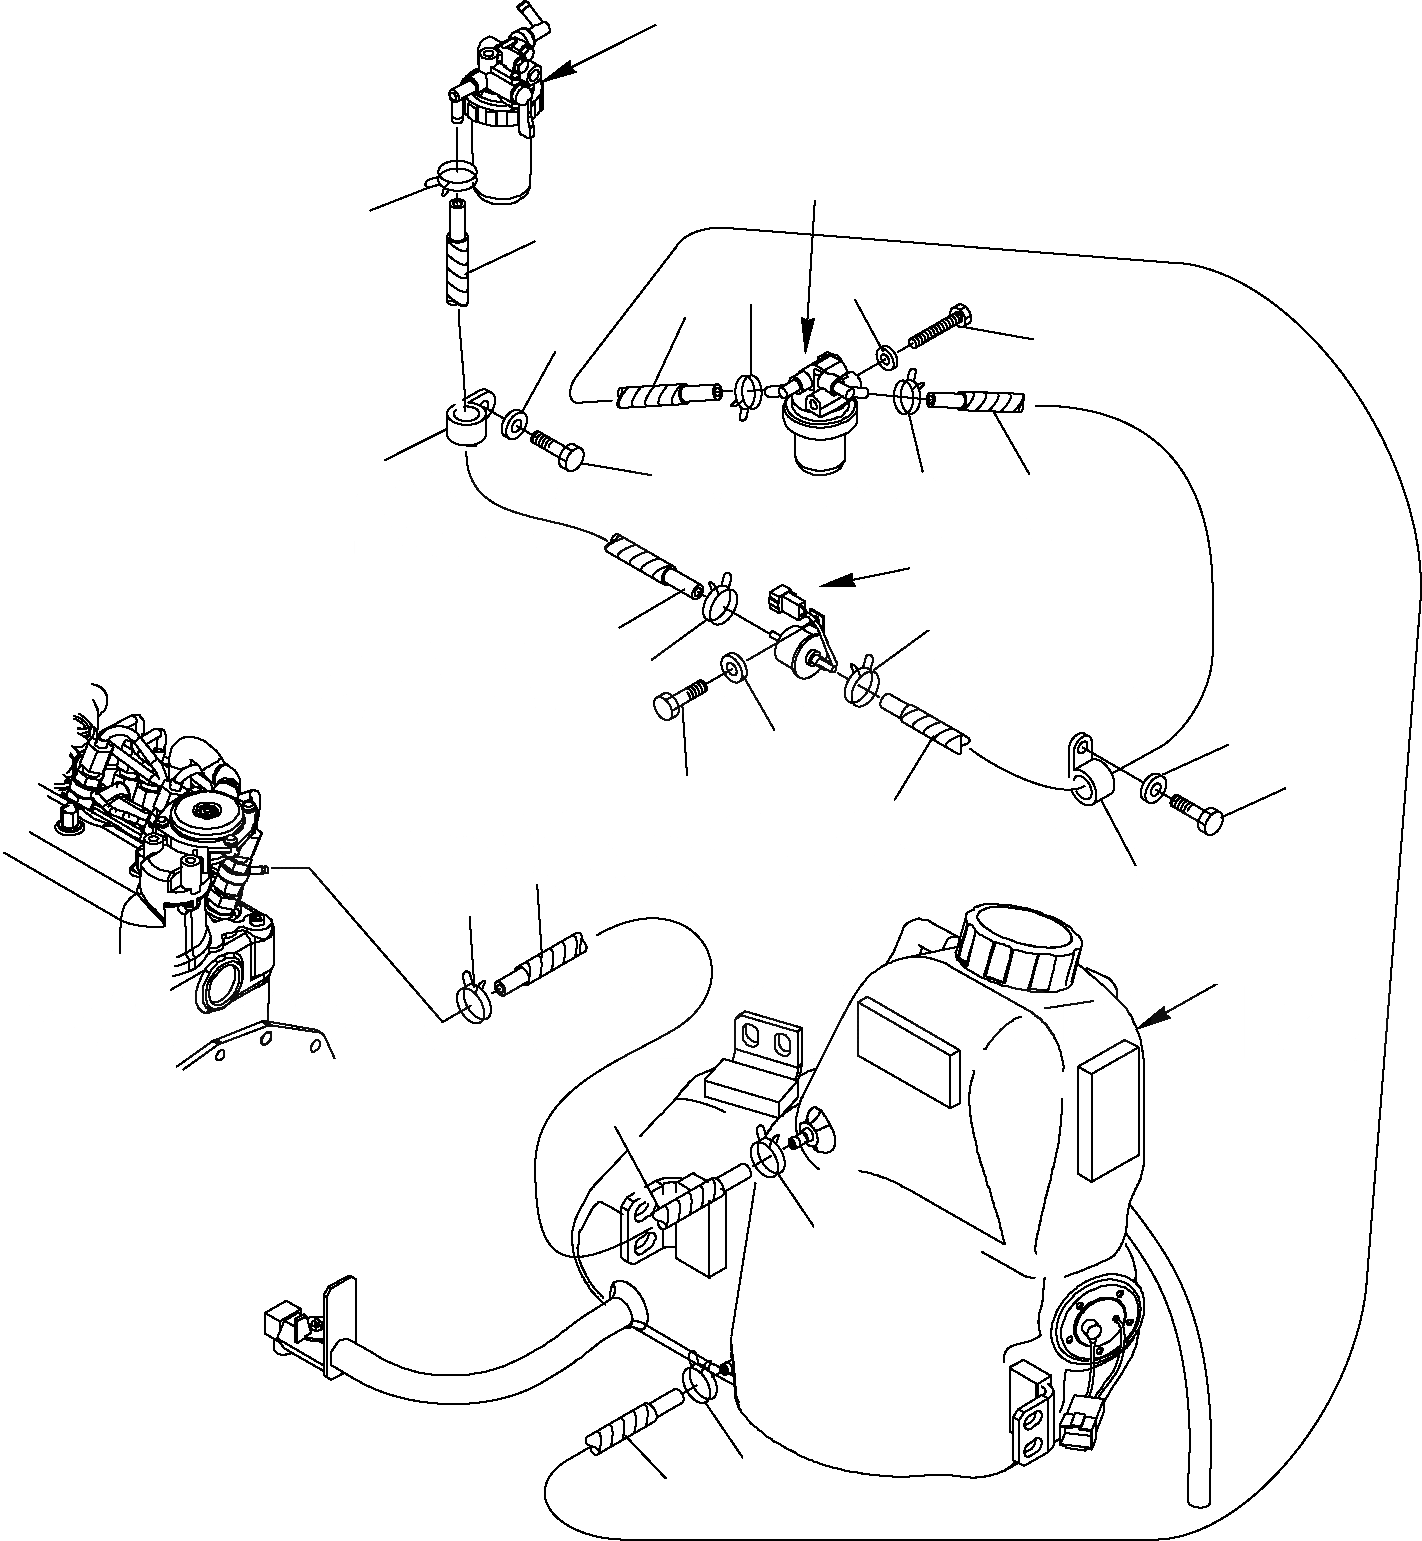 Схема запчастей Komatsu PC16R-2 - ТОПЛИВОПРОВОД. КОМПОНЕНТЫ ДВИГАТЕЛЯ И ЭЛЕКТРИКА